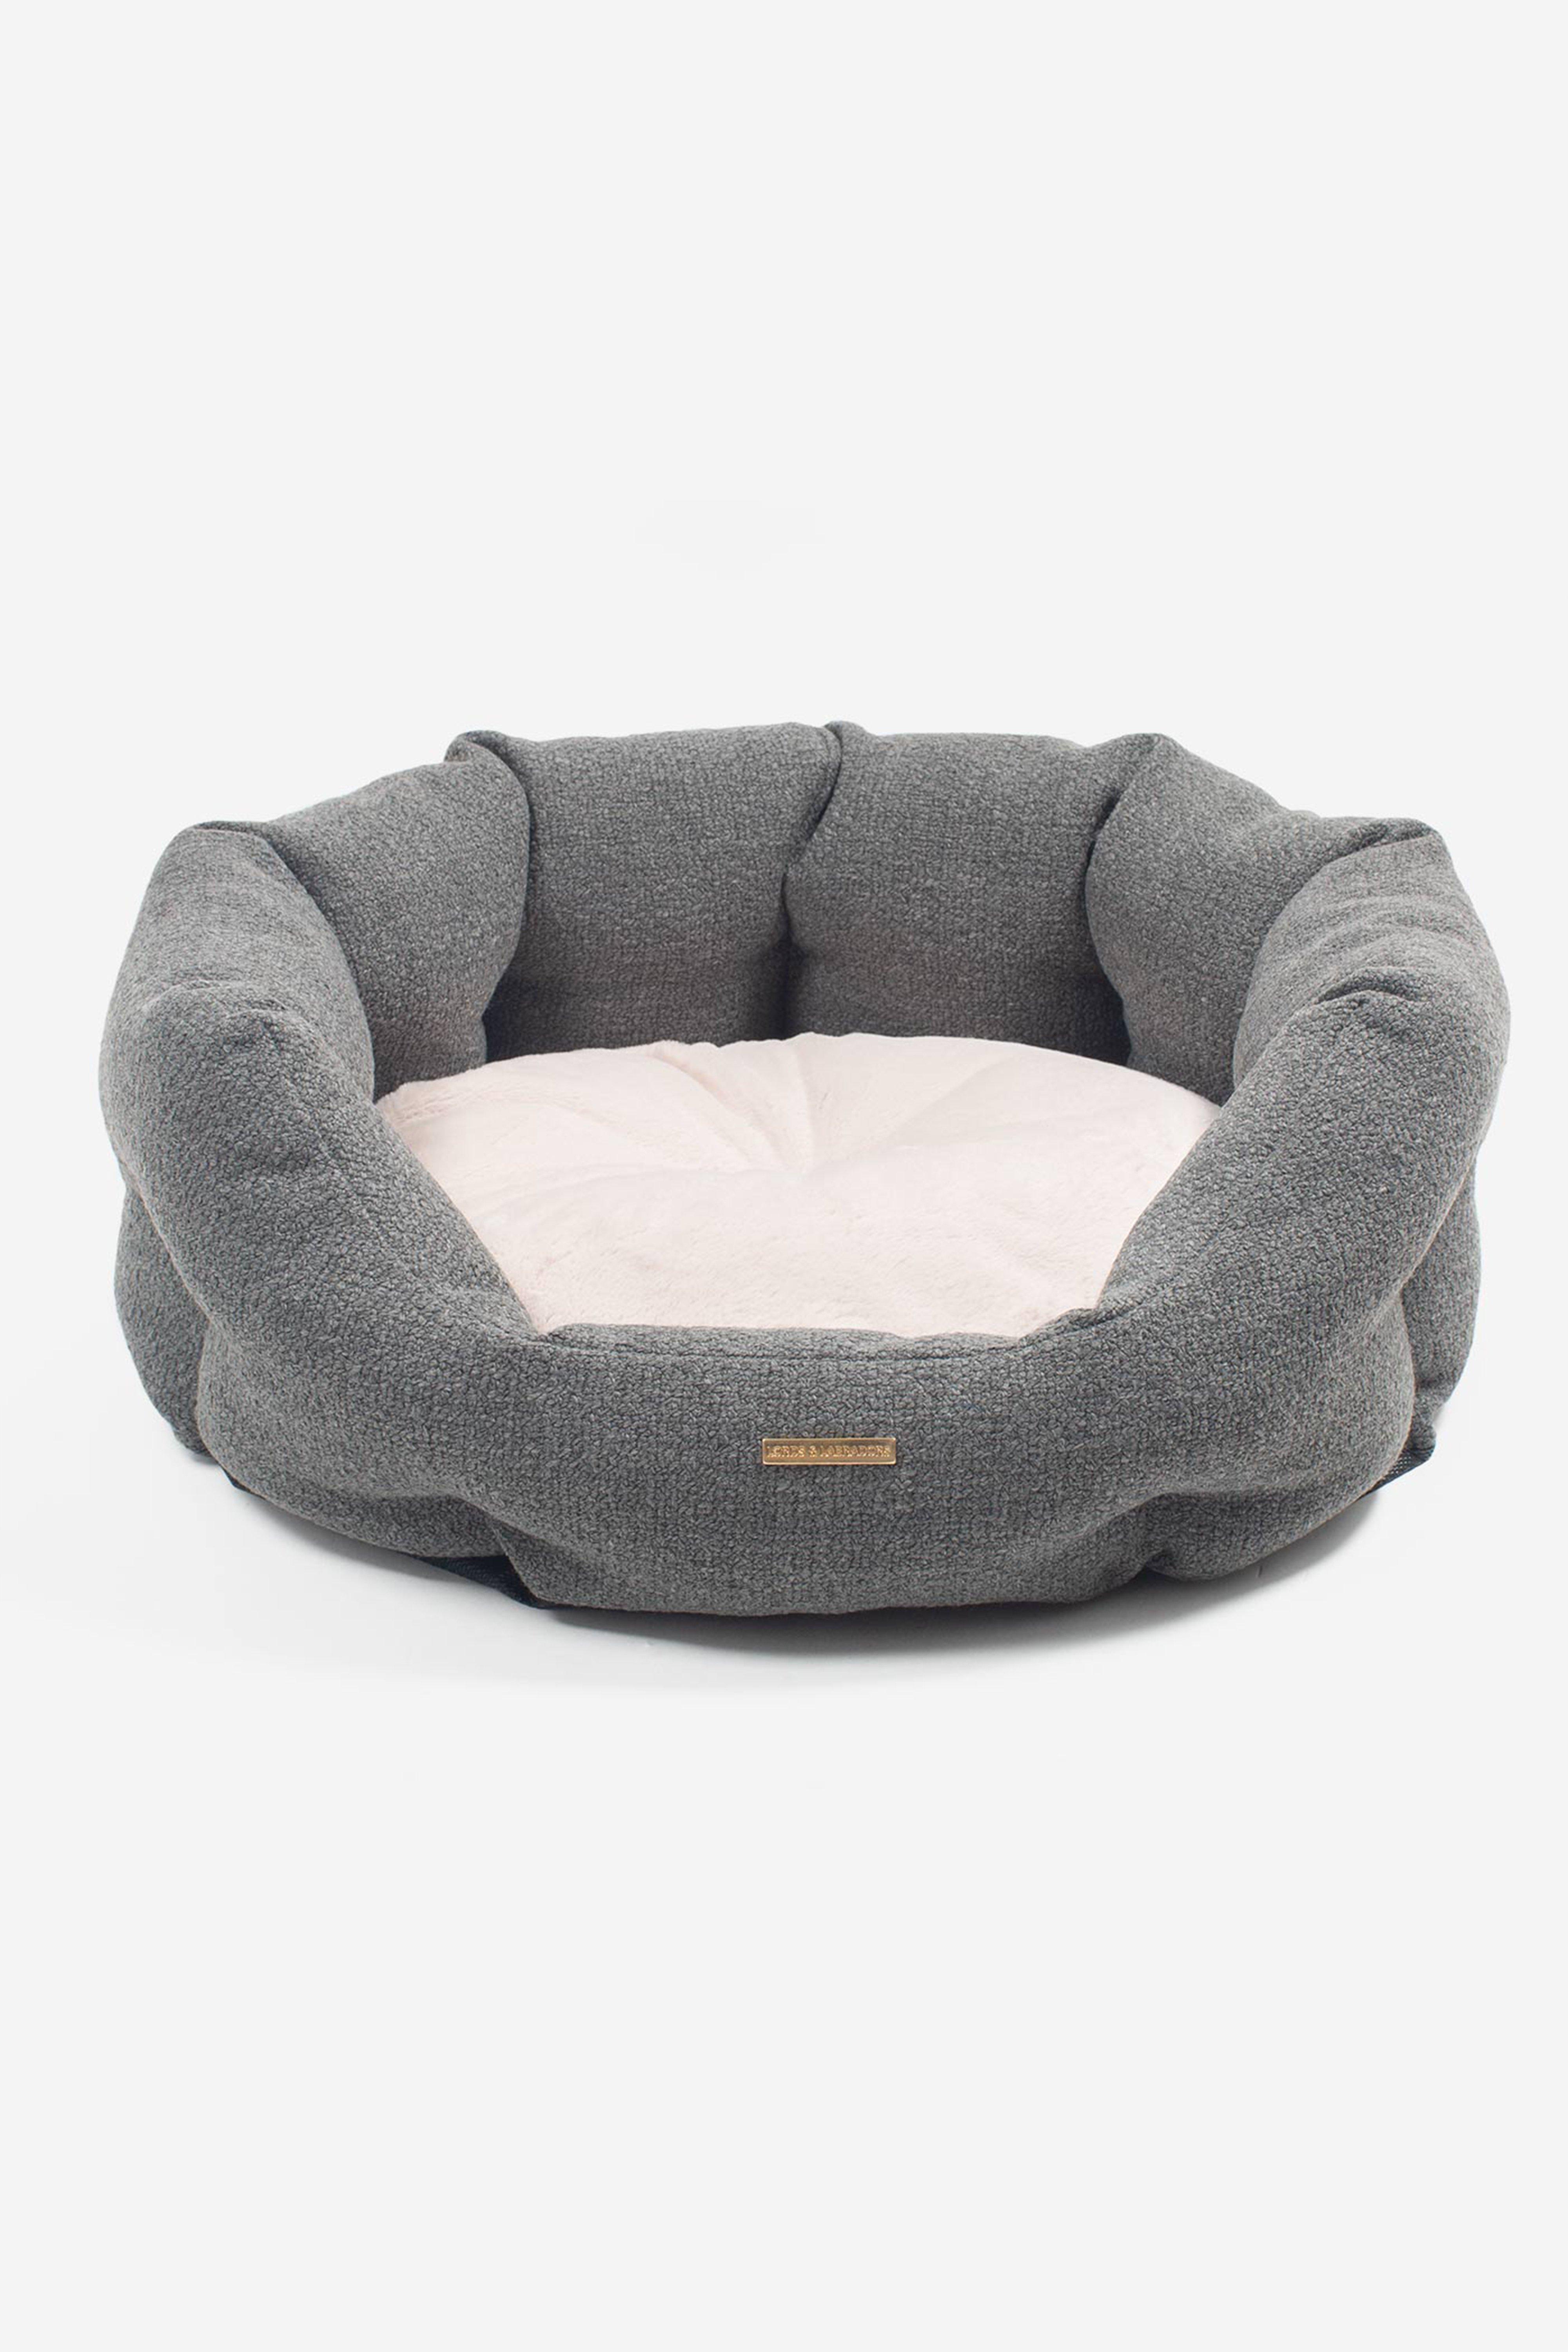 Essentials  Herdwick Oval Dog Bed